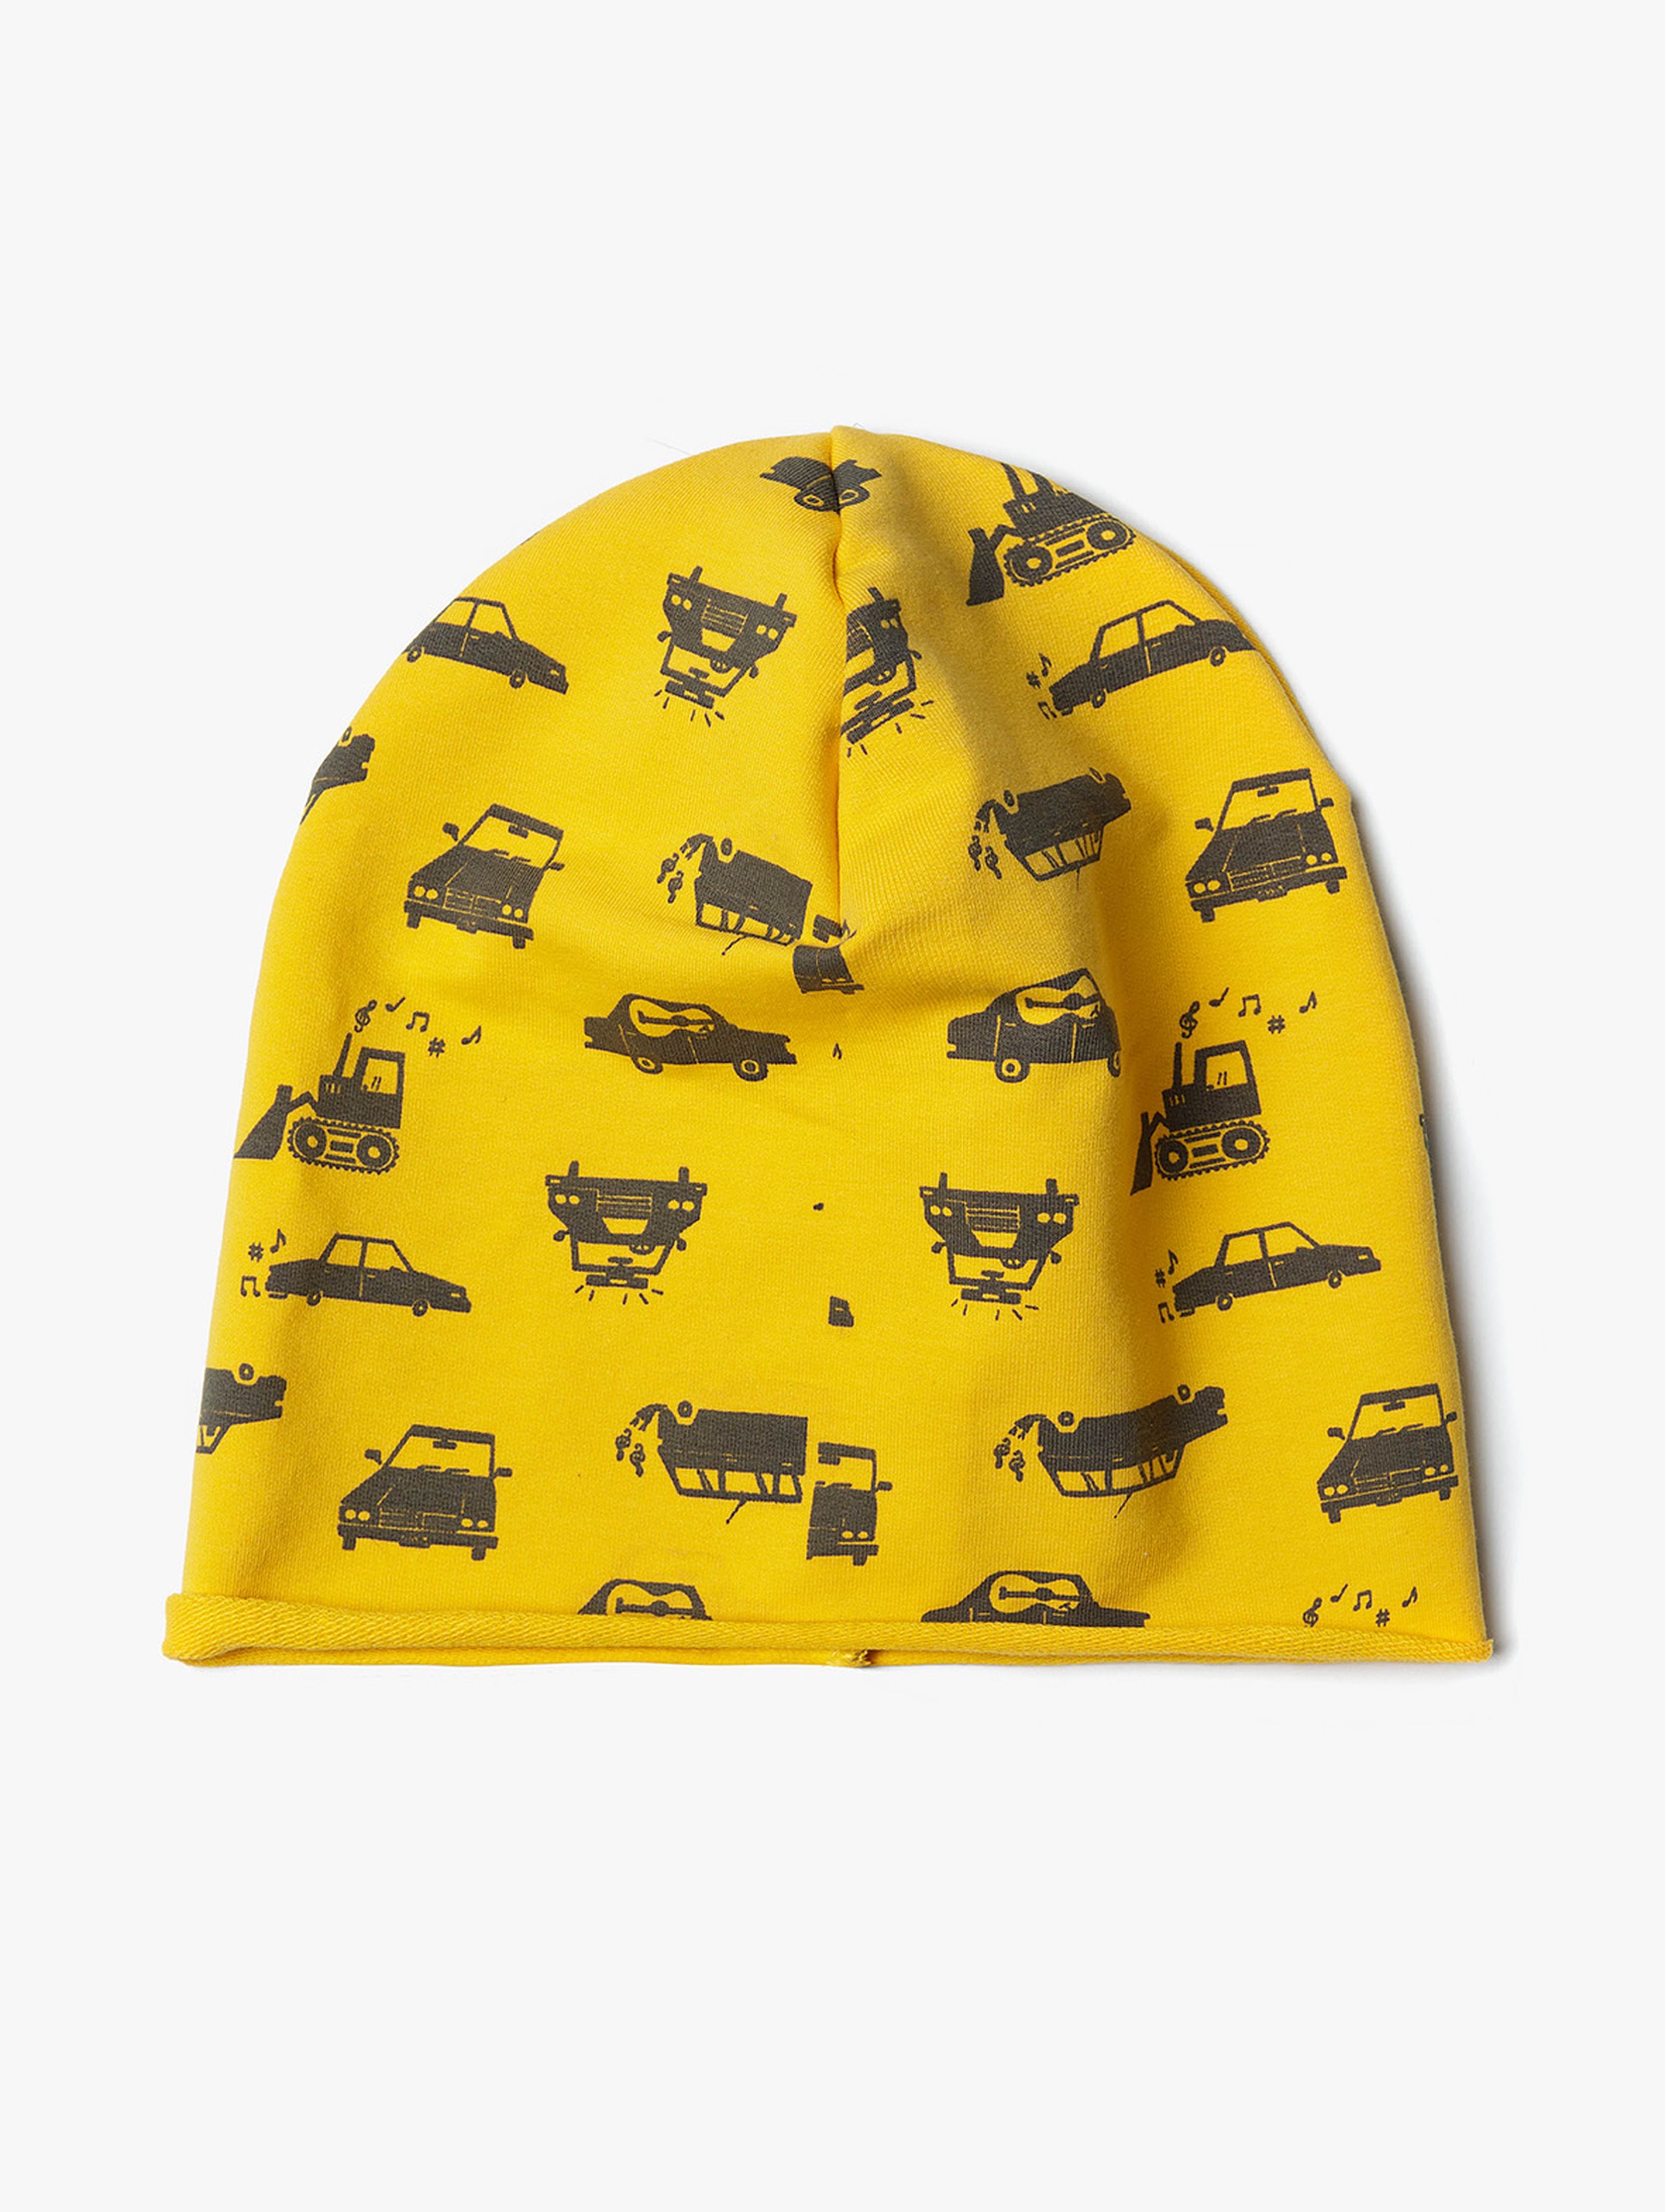 Czapka dzianinowa chłopięca - żółta w samochody